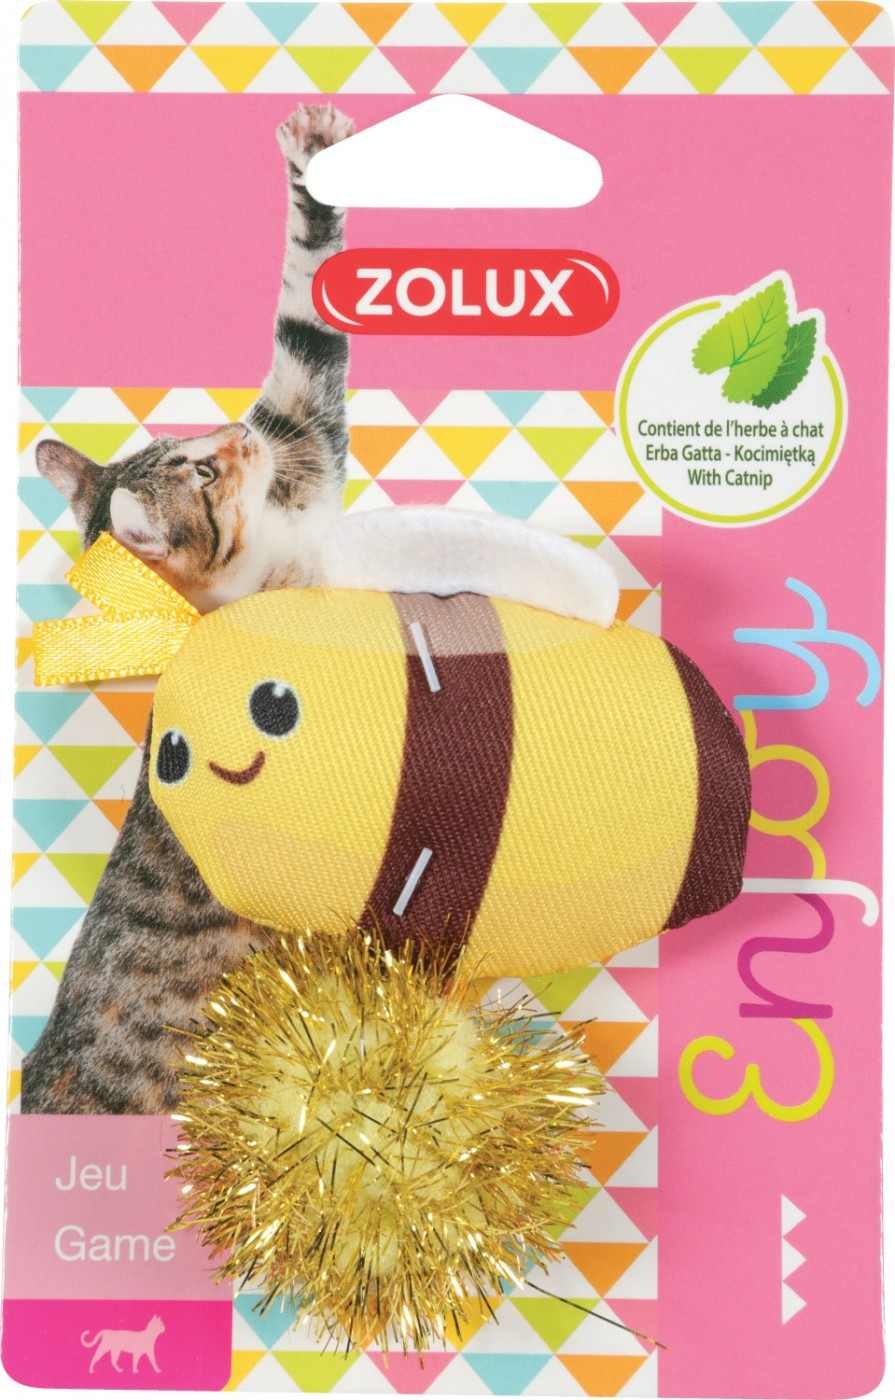 Zolux Lovely Brinquedo para gato com erva gateira - Abelha